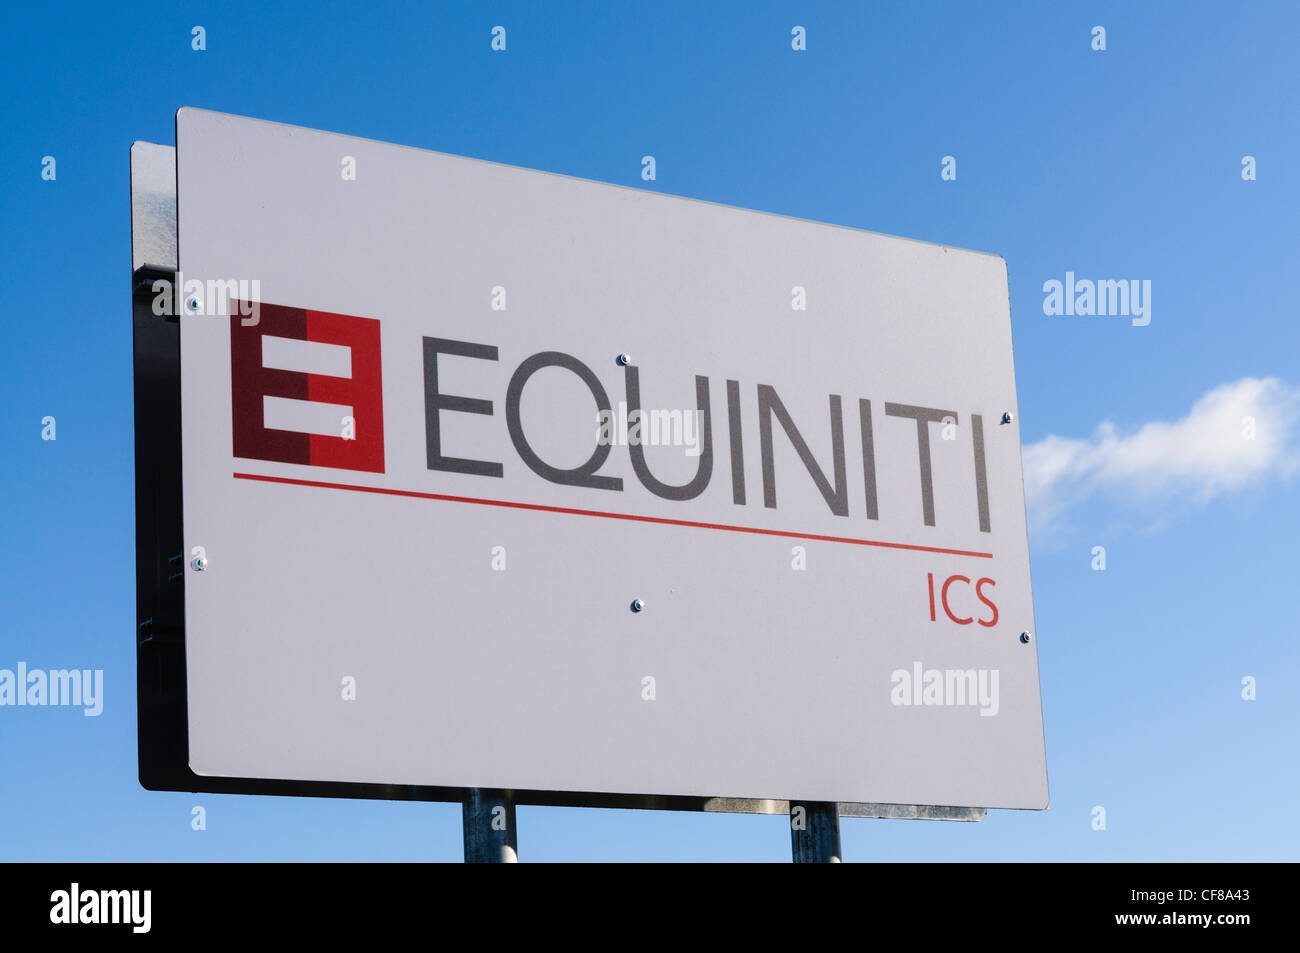 Equiniti ICS Banque D'Images